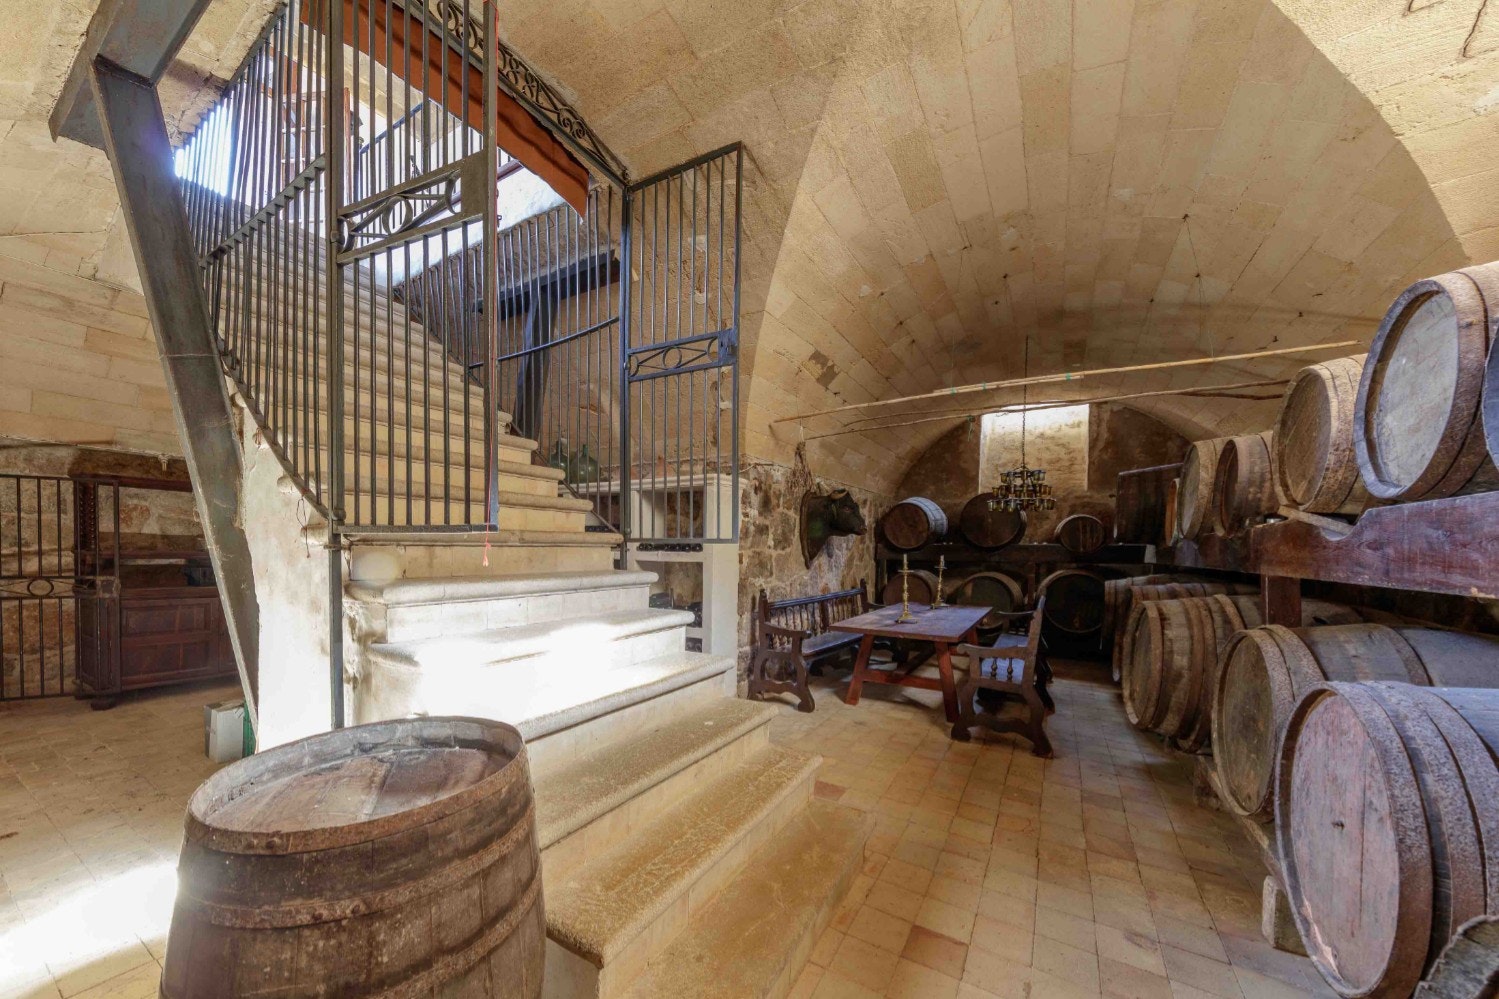 The cellar of Michael Douglas's estate in Mallorca